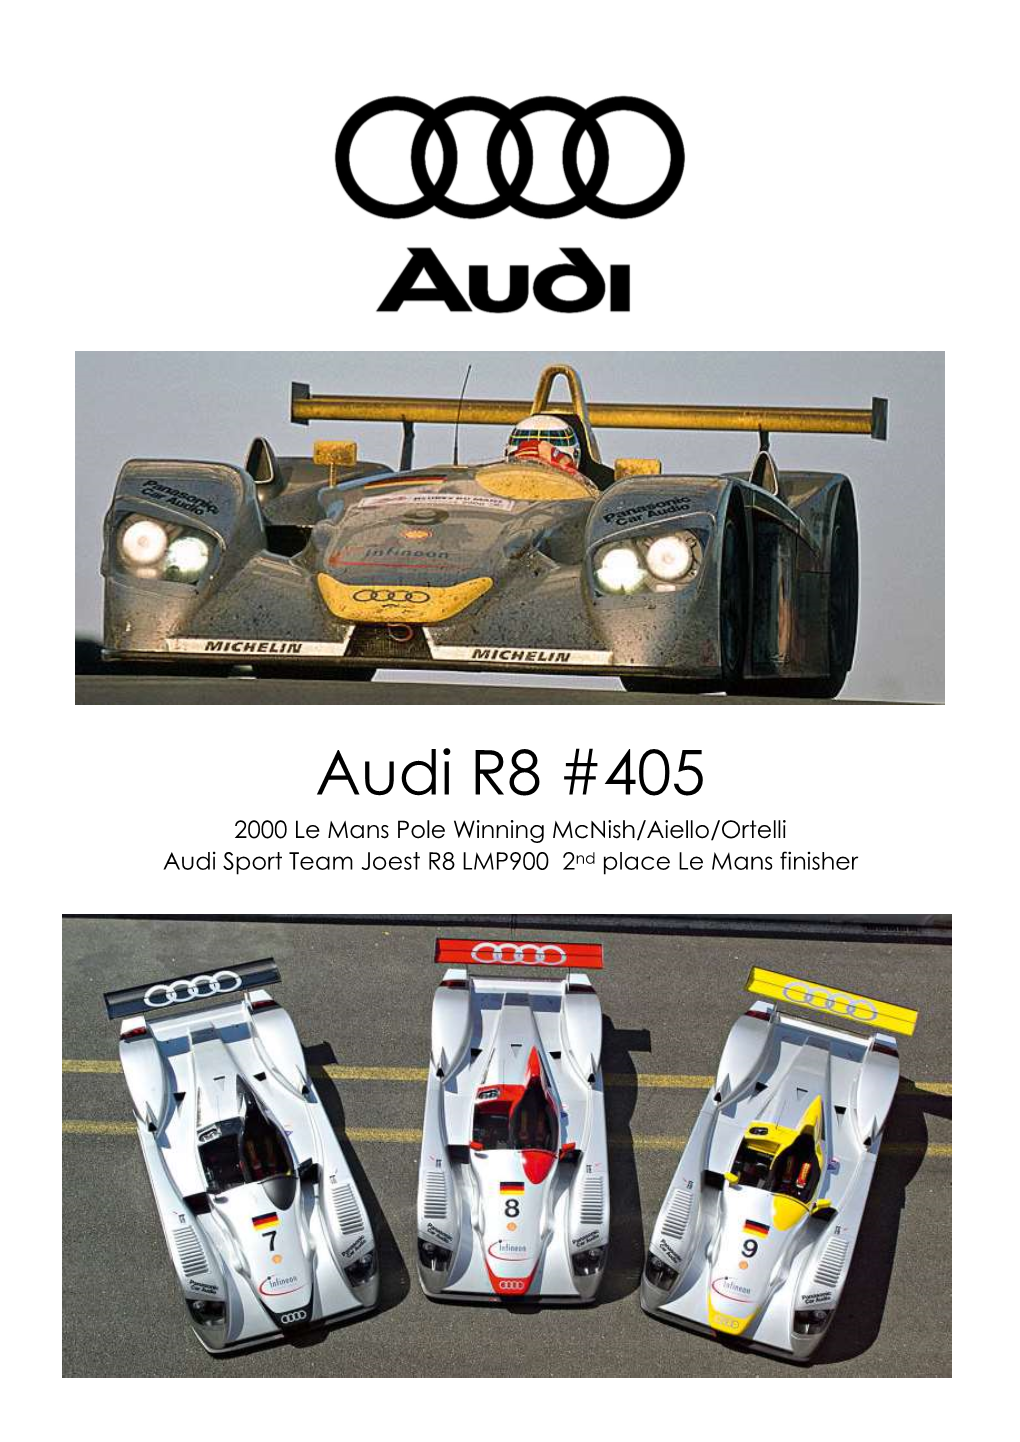 Audi R8 #405 2000 Le Mans Pole Winning Mcnish/Aiello/Ortelli Audi Sport Team Joest R8 LMP900 2Nd Place Le Mans Finisher